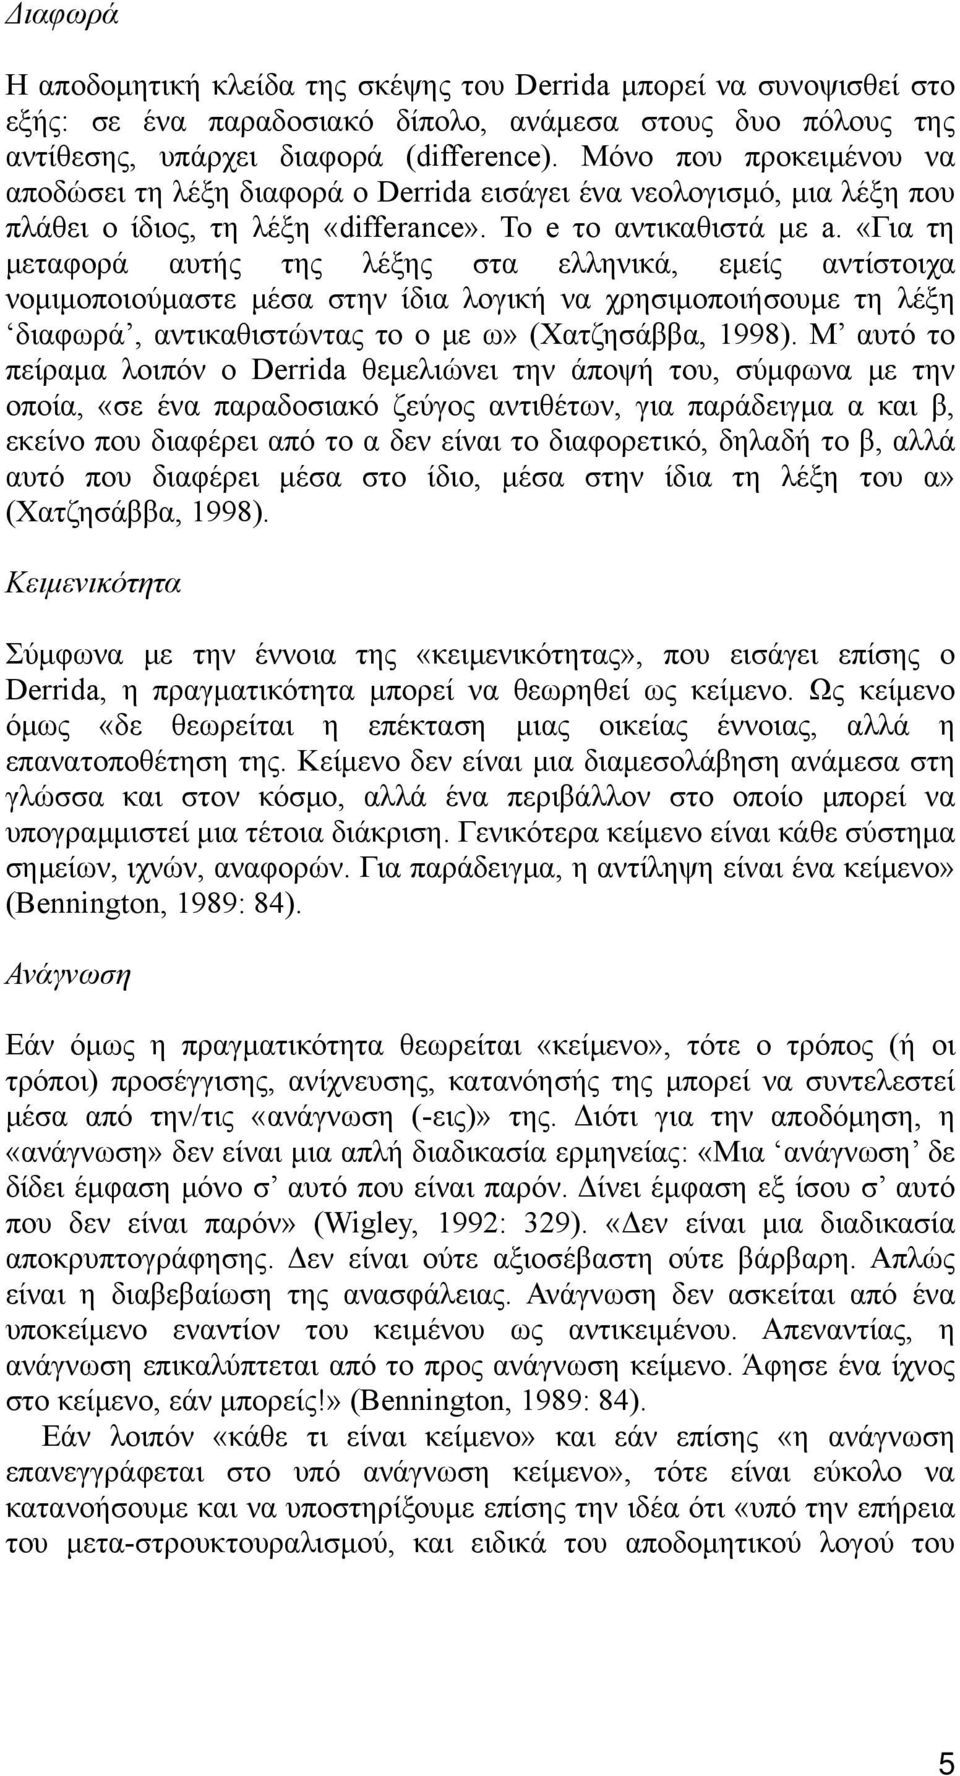 «Για τη μεταφορά αυτής της λέξης στα ελληνικά, εμείς αντίστοιχα νομιμοποιούμαστε μέσα στην ίδια λογική να χρησιμοποιήσουμε τη λέξη διαφωρά, αντικαθιστώντας το ο με ω» (Χατζησάββα, 1998).